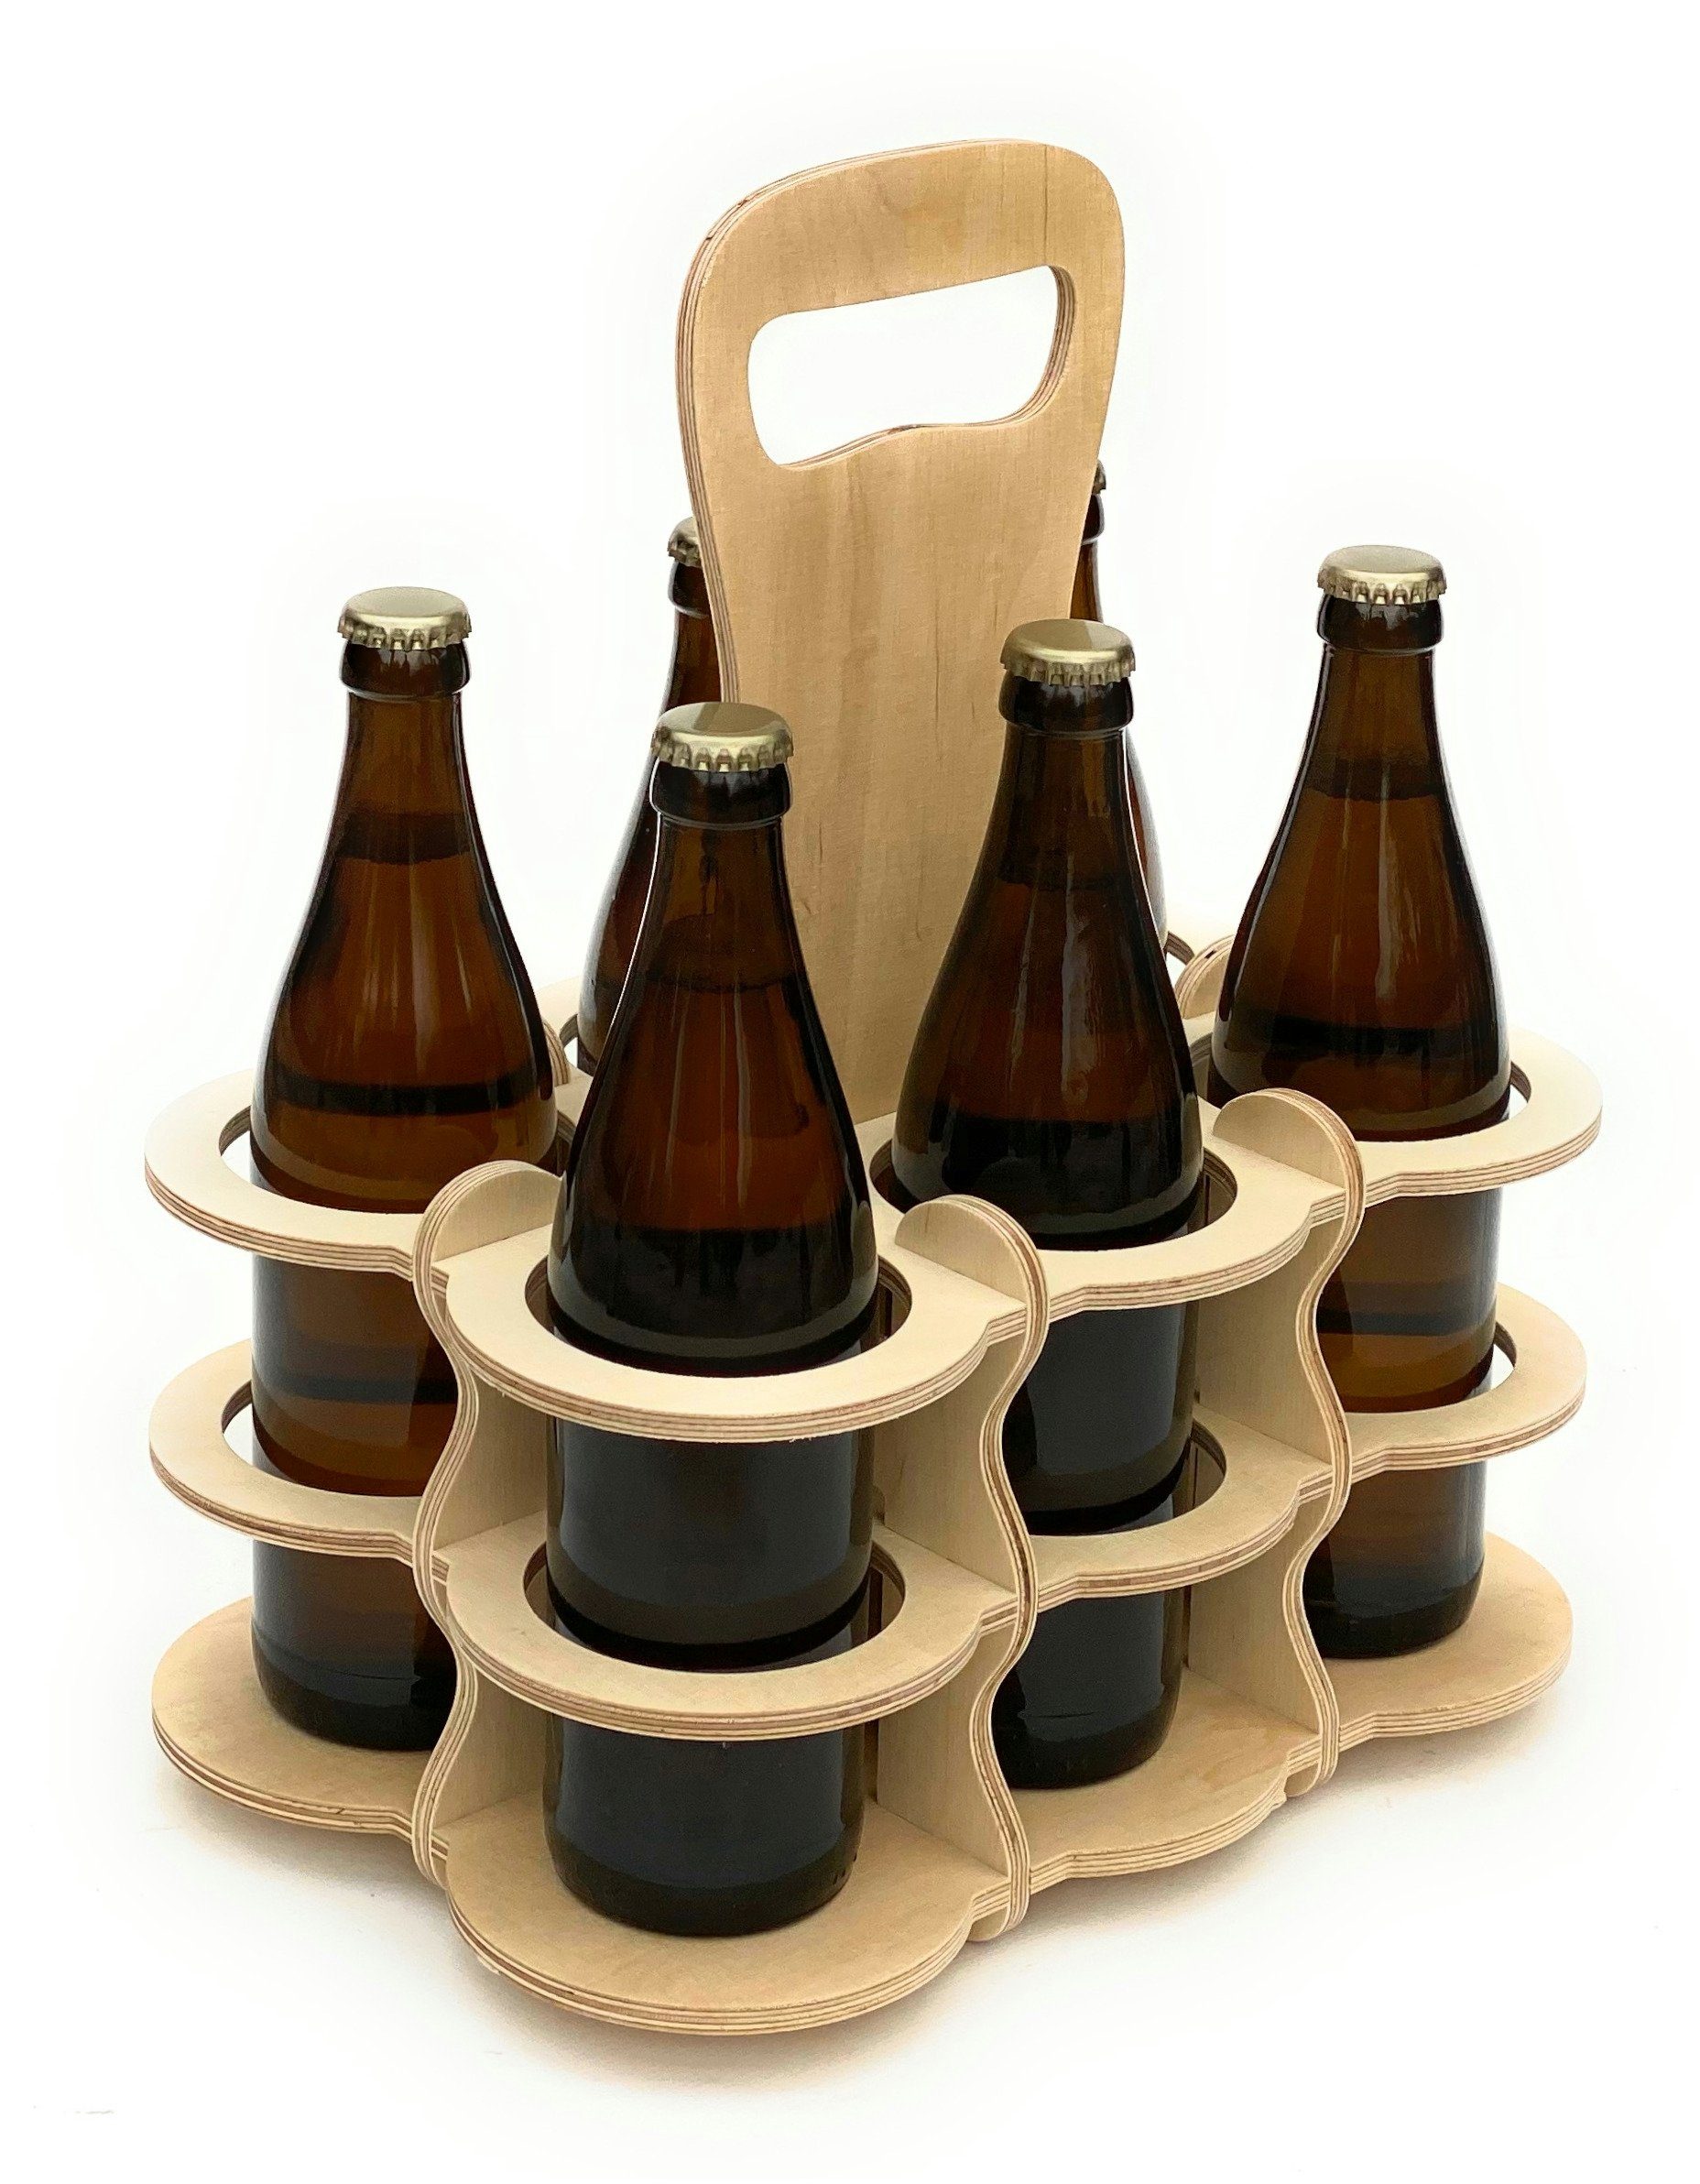 Flaschenkorb 96143 Bier Männerhandtasche Flaschenkorb 6 Flaschenträger Bierträger aus Holz DanDiBo Flaschen